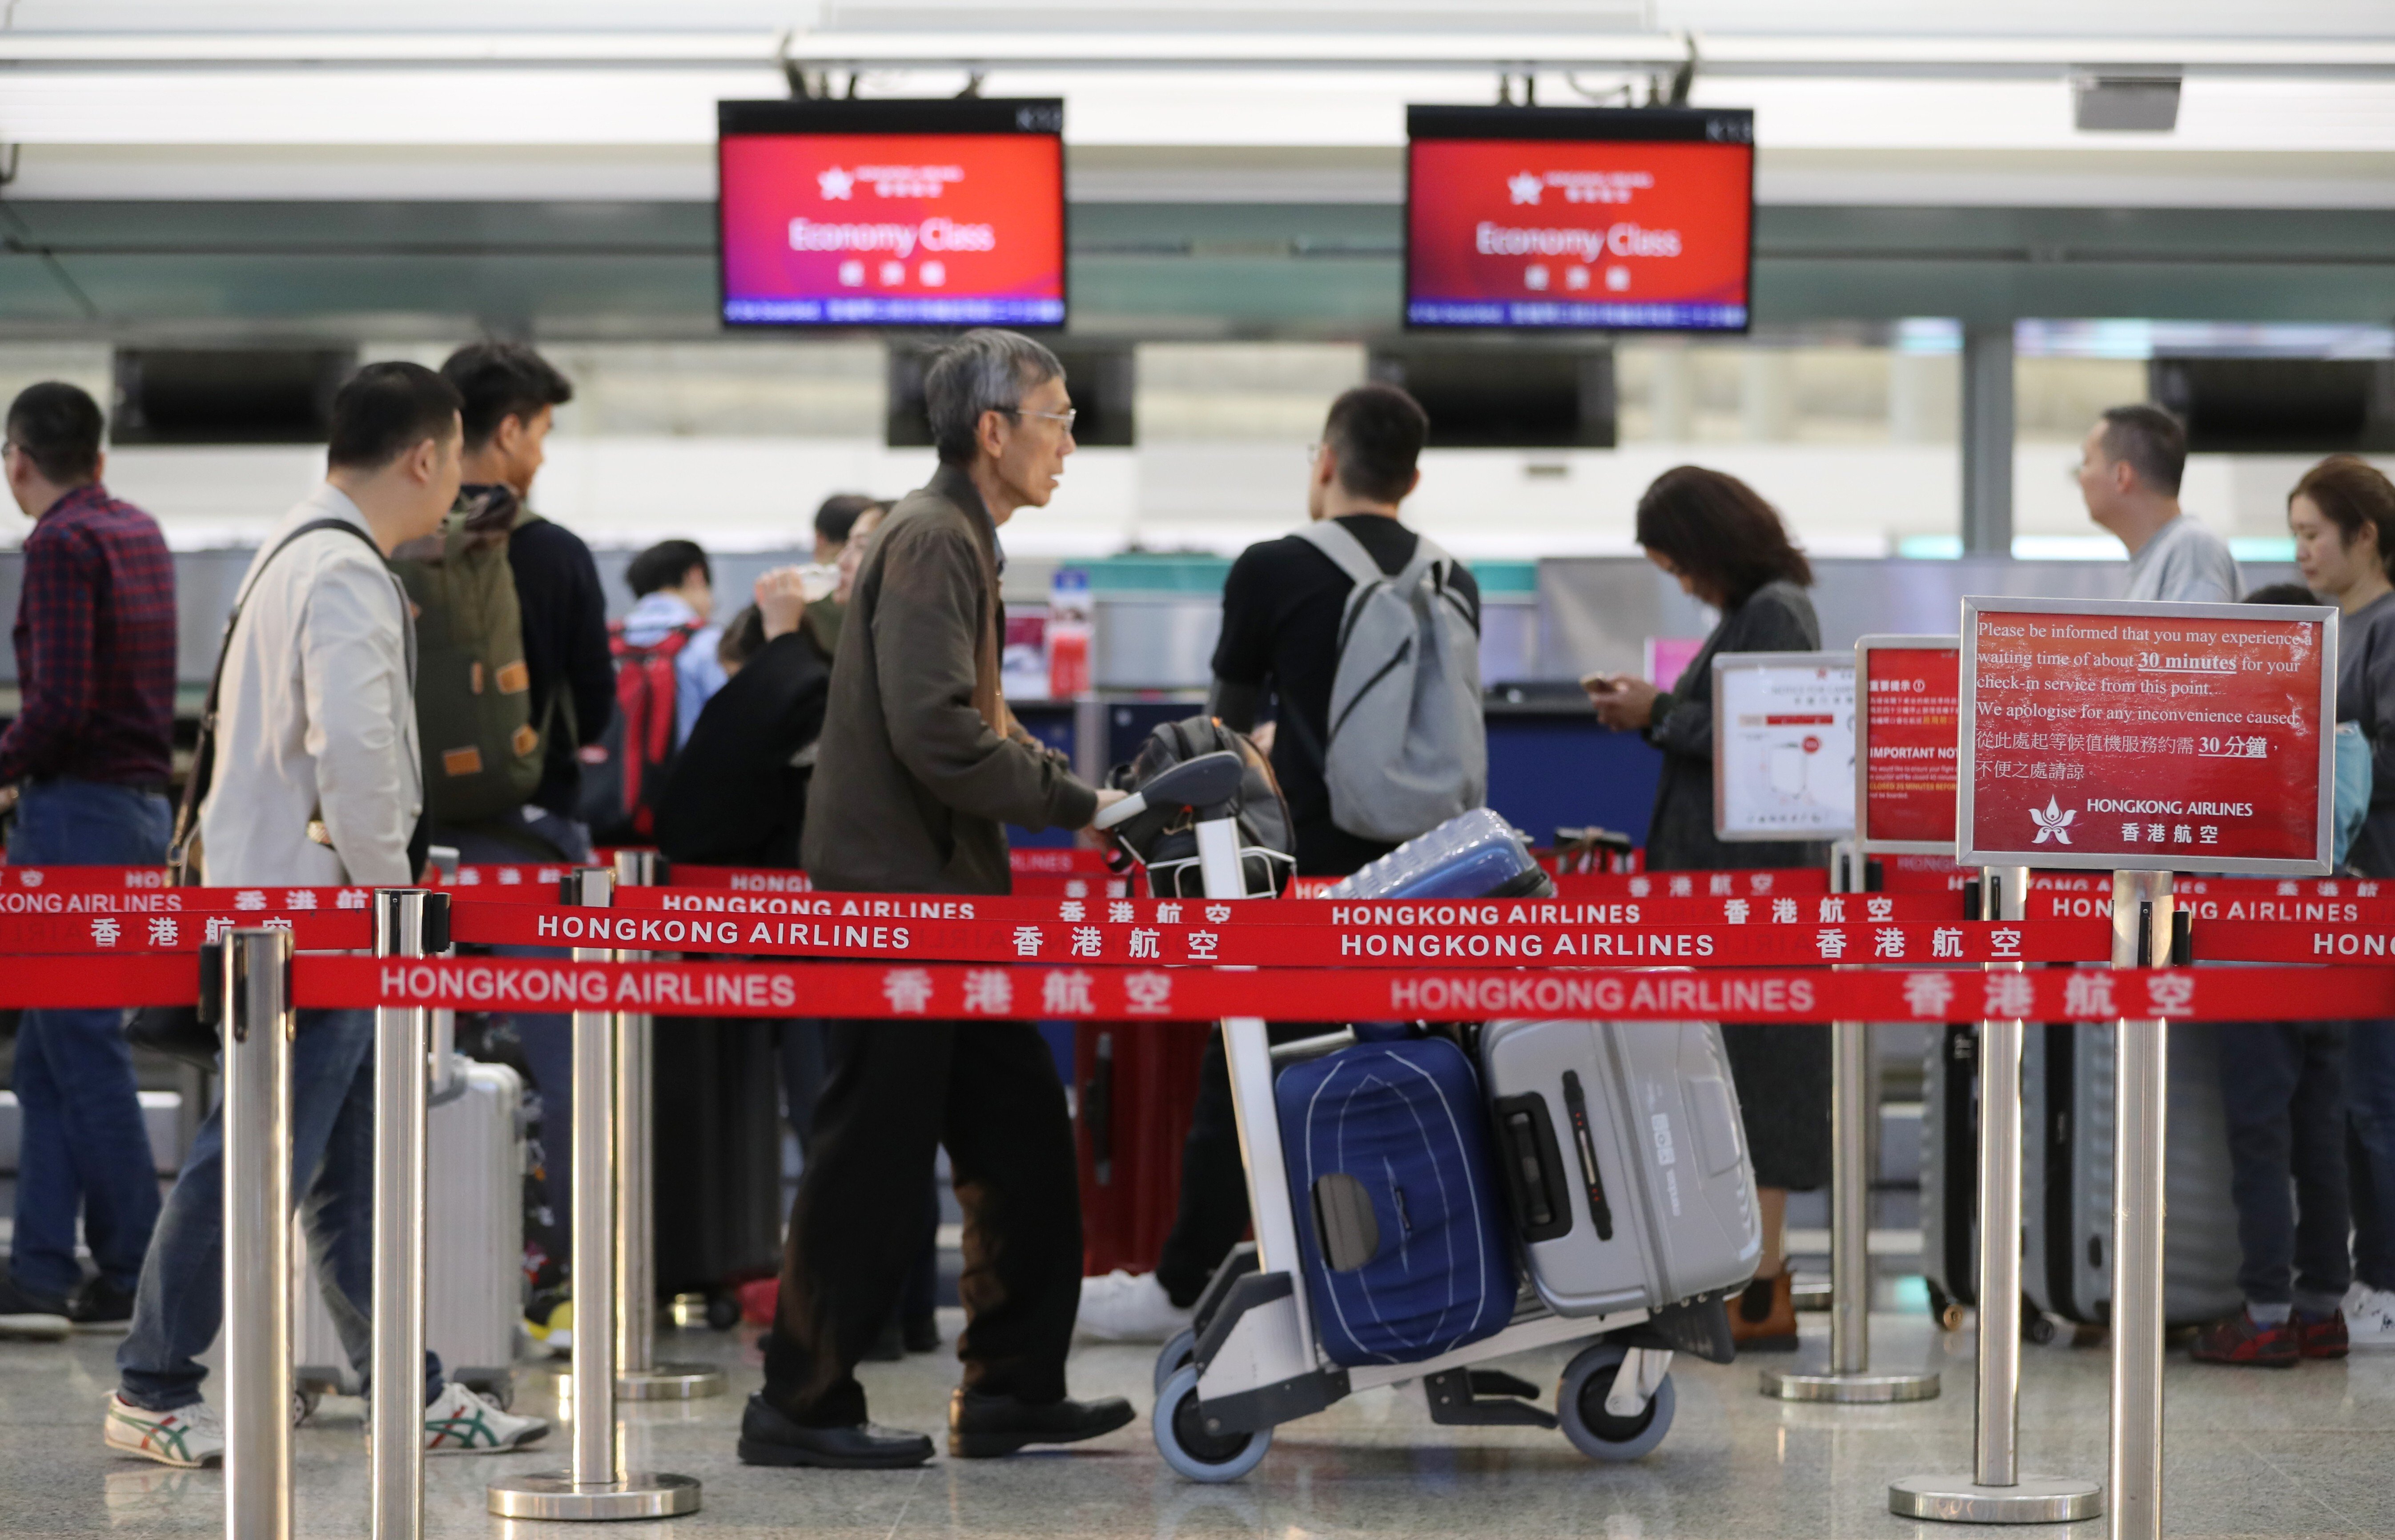 Passengers at the Hong Kong Airlines check in counter, Hong Kong International Airport, Chek Lap Kok on 29 November 2019. Photo: Edward Wong